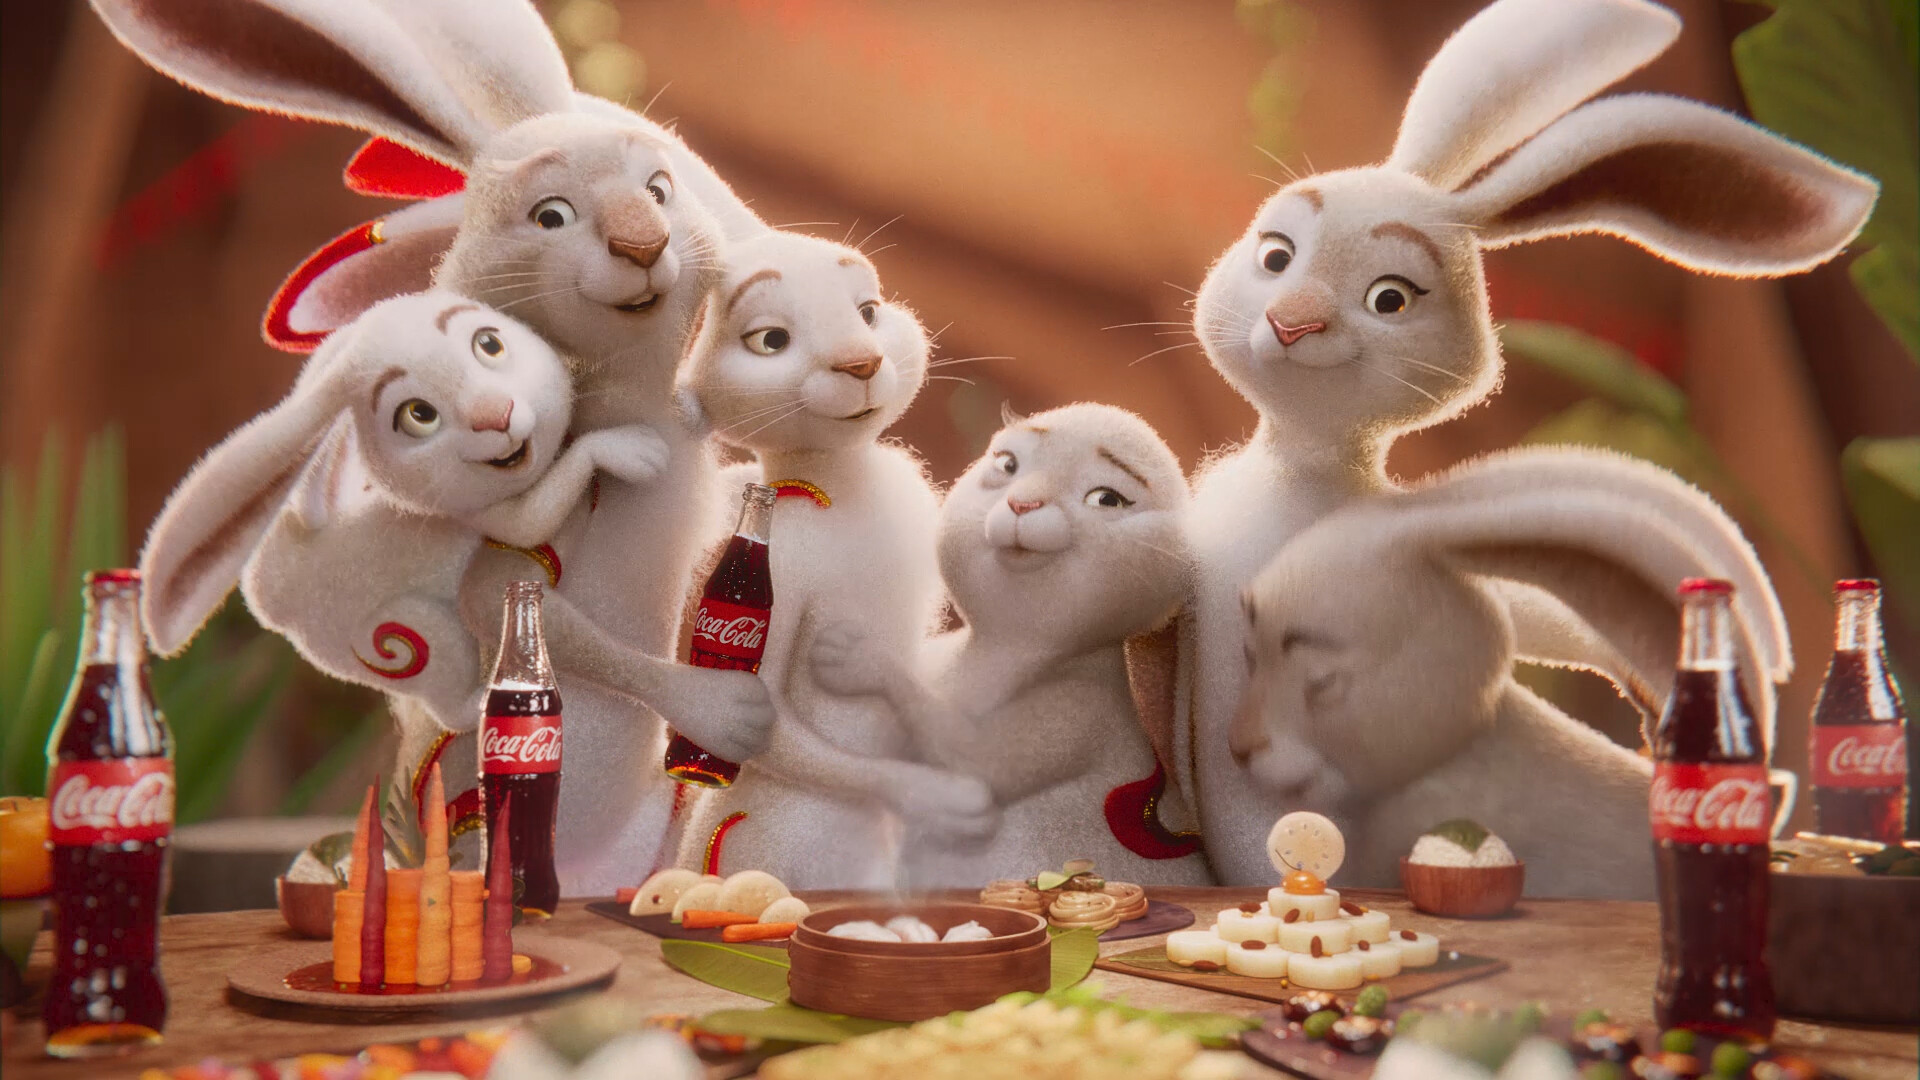 Coca-Cola Lunar New Year - Rabbit by Pedro Conti